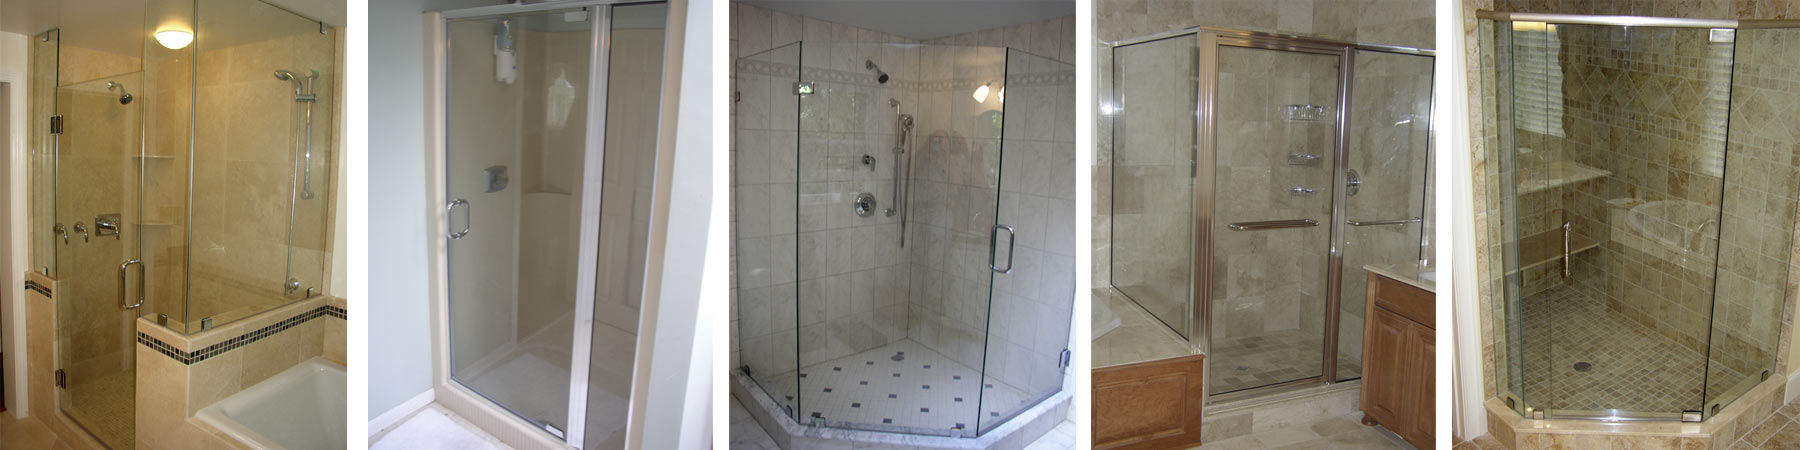 Wayside Glass shower door installers